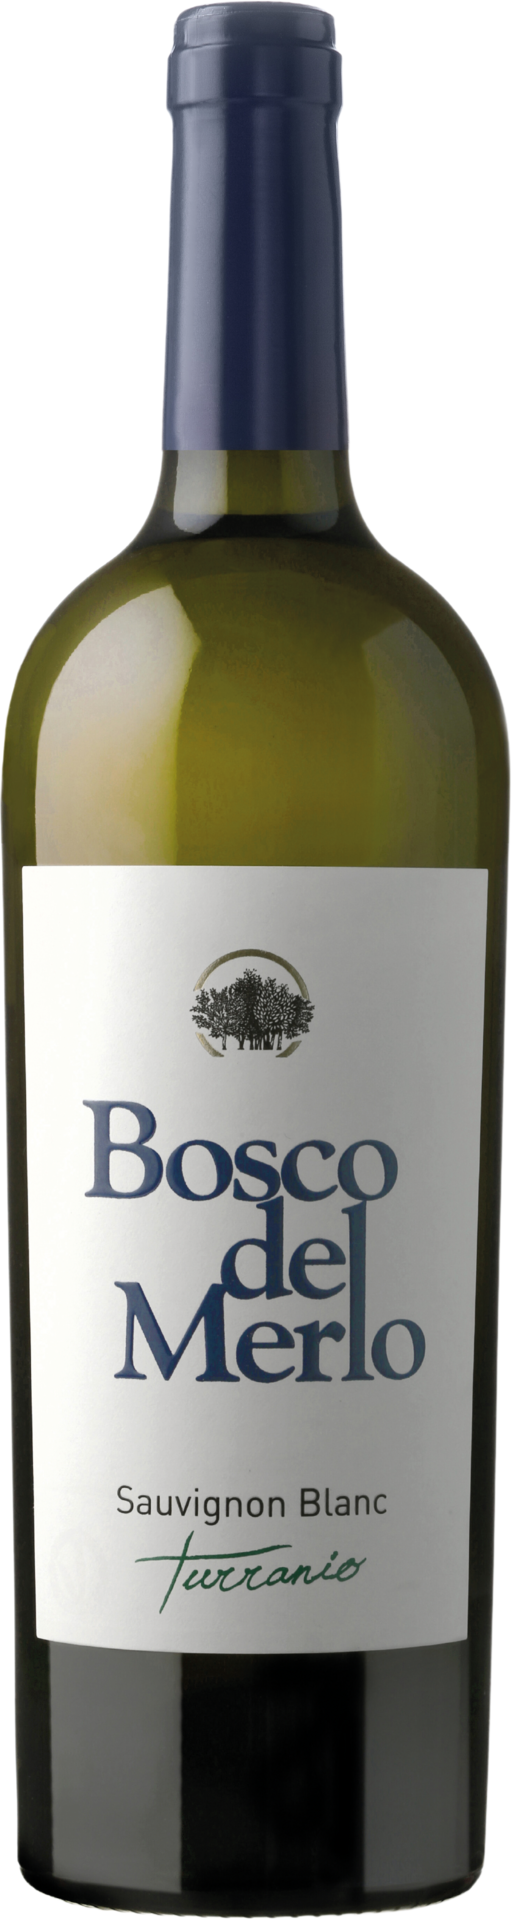 Bosco del Merlo Sauvignon Blanc Turranio DOC Friuli 